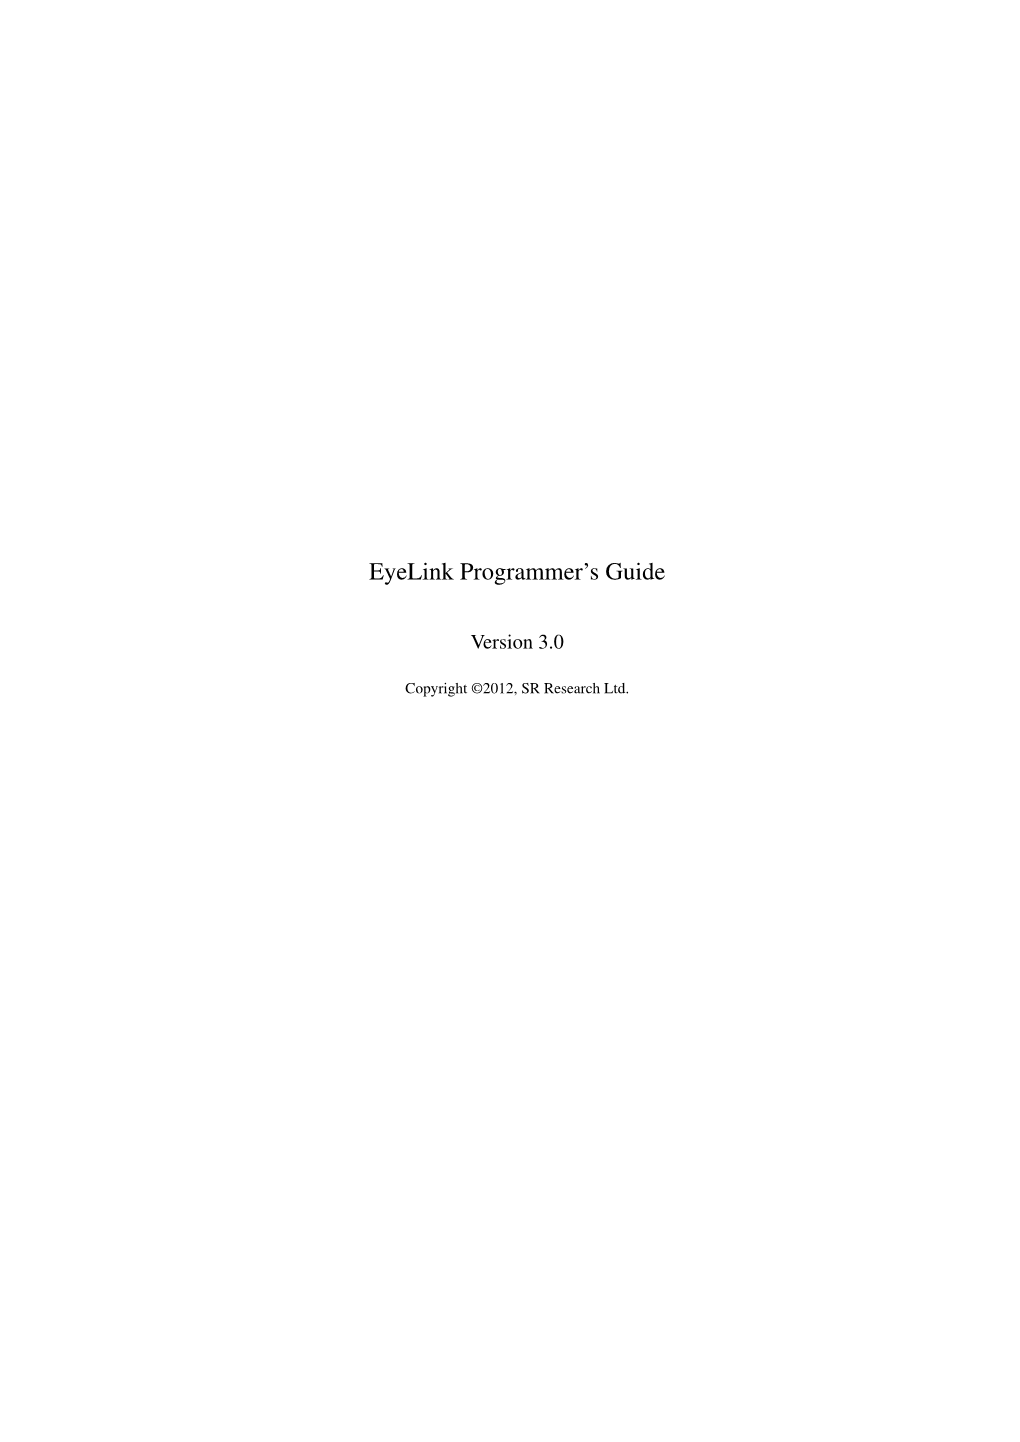 Eyelink Programmer's Guide